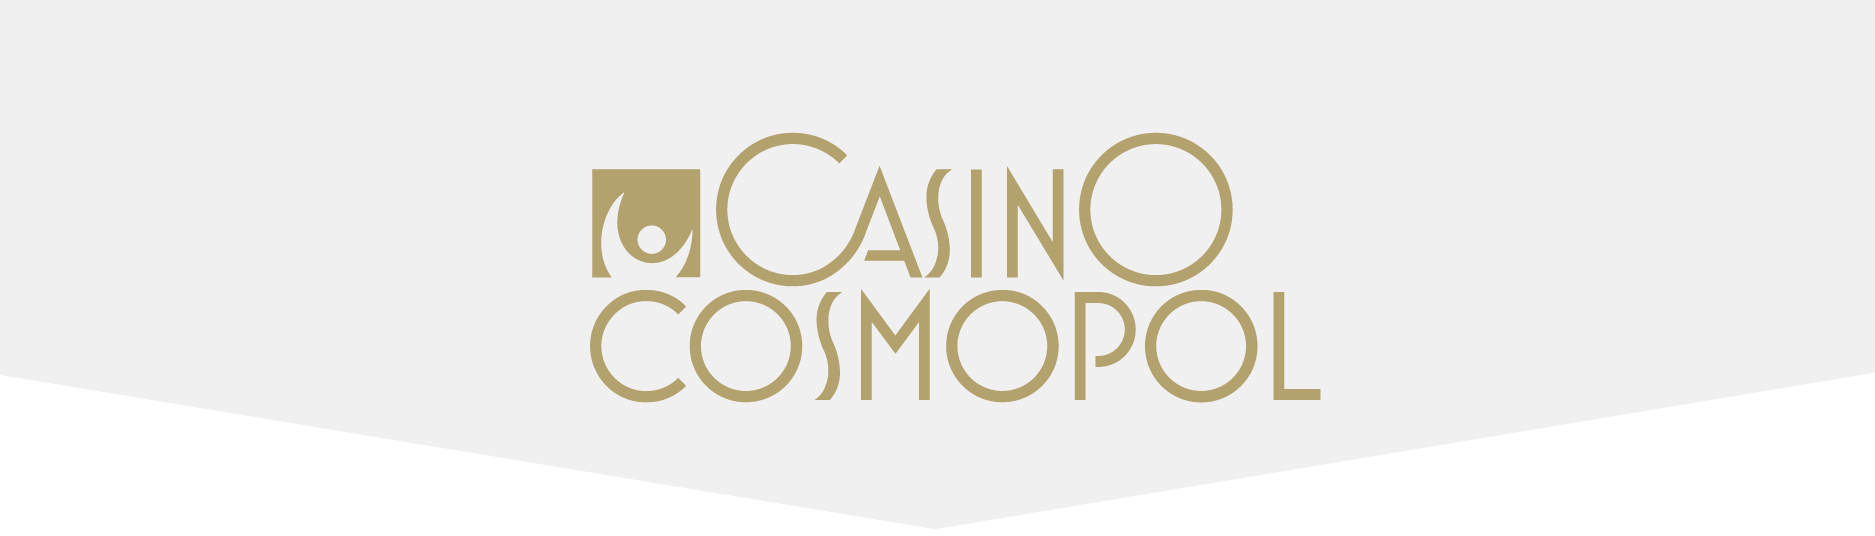 Casino Cosmopol sparkar över 100 personer